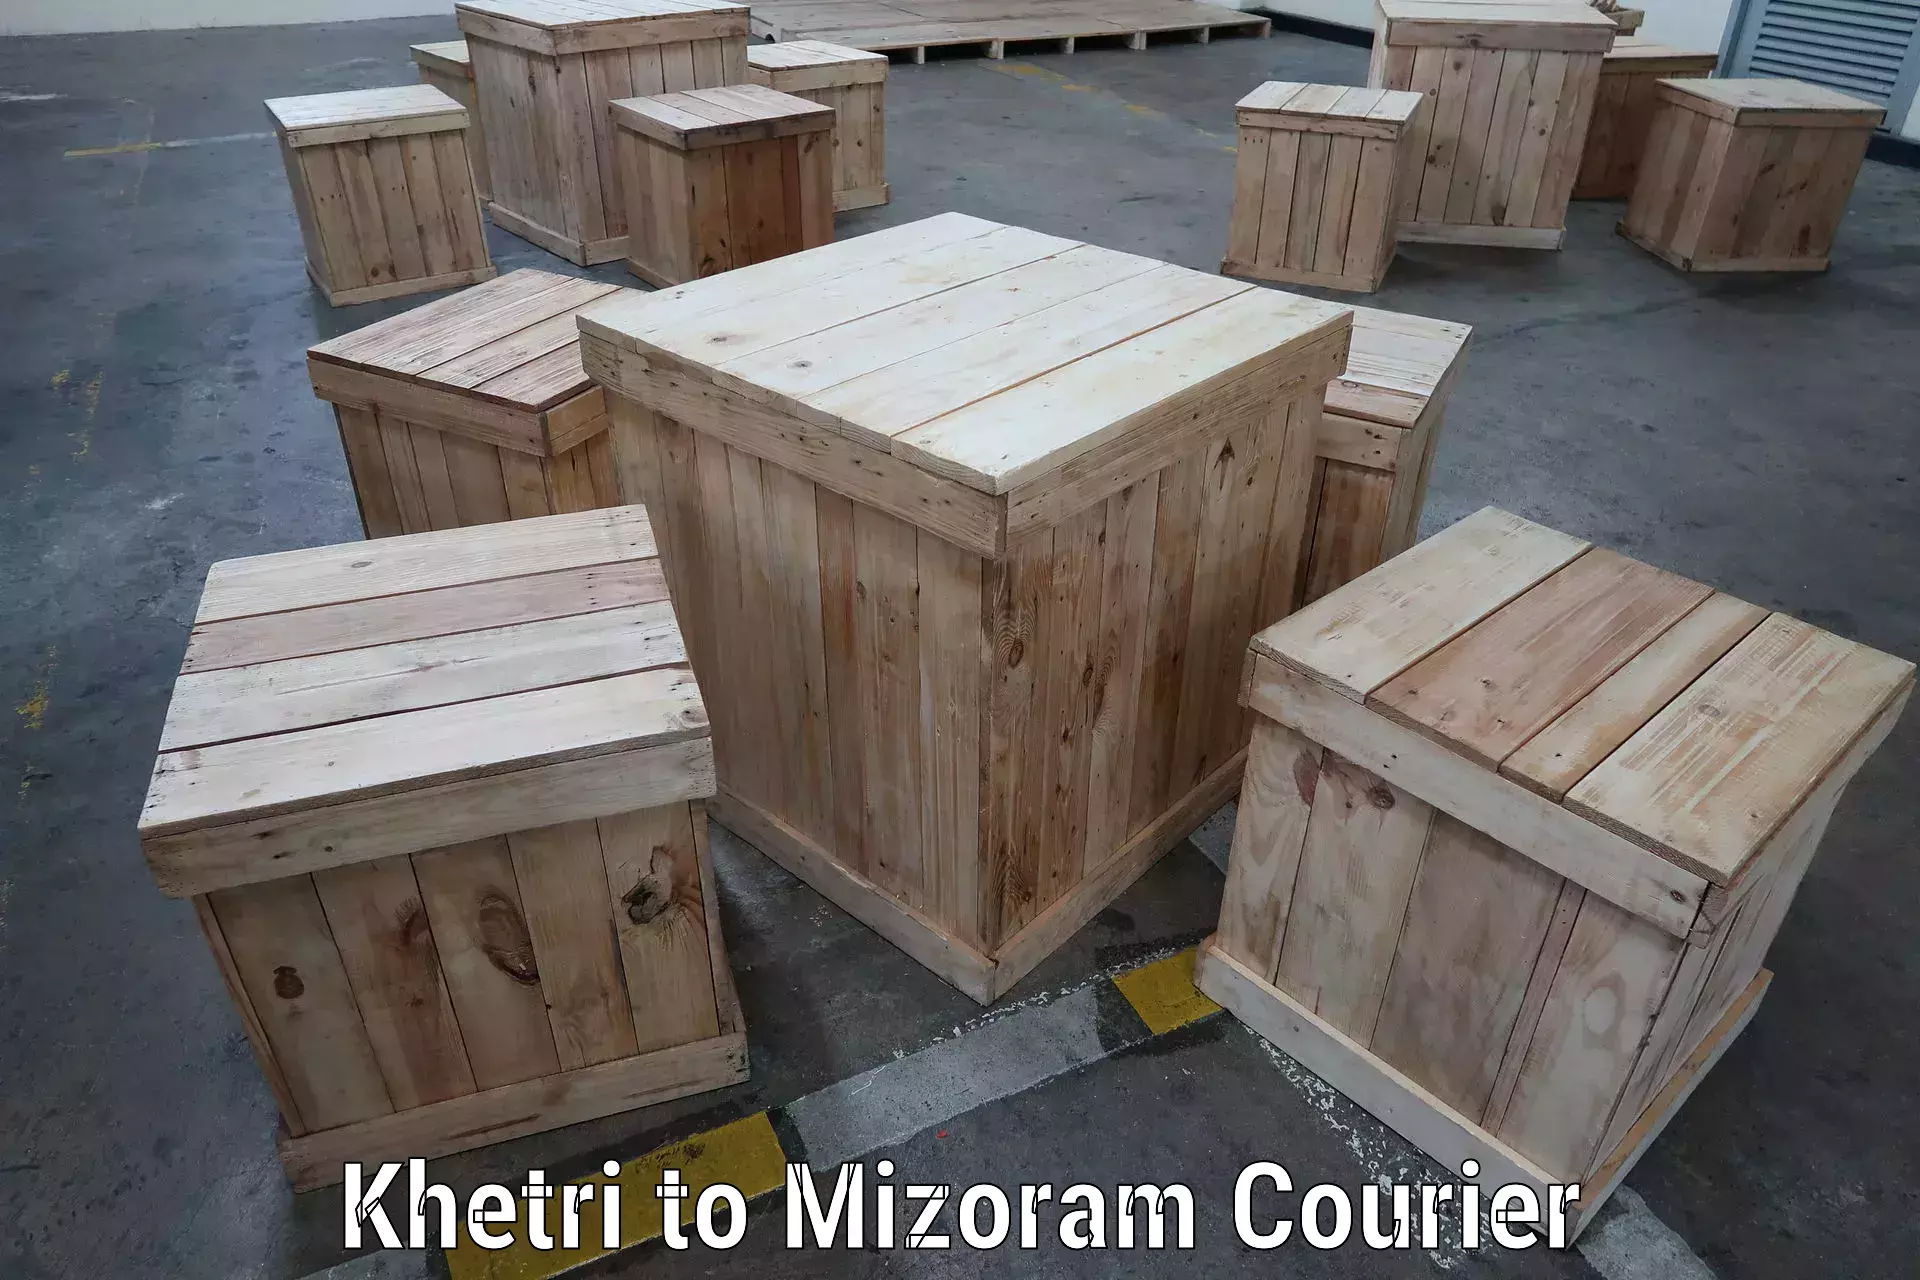 Efficient parcel service Khetri to Mizoram